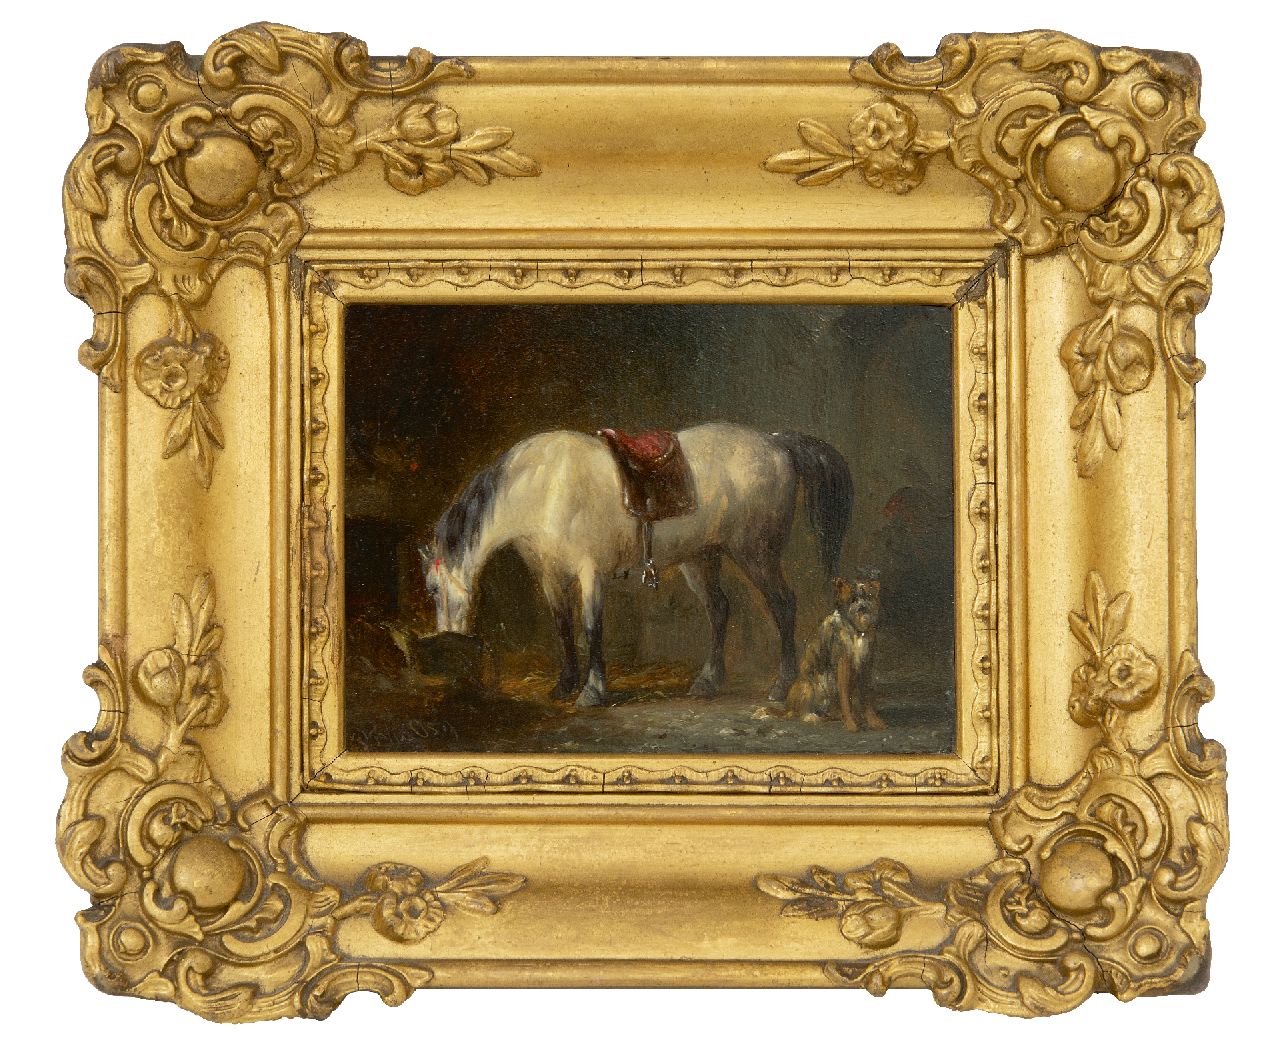 Os P.F. van | Pieter Frederik van Os | Schilderijen te koop aangeboden | In de stal, olieverf op paneel 9,1 x 12,2 cm, gesigneerd linksonder